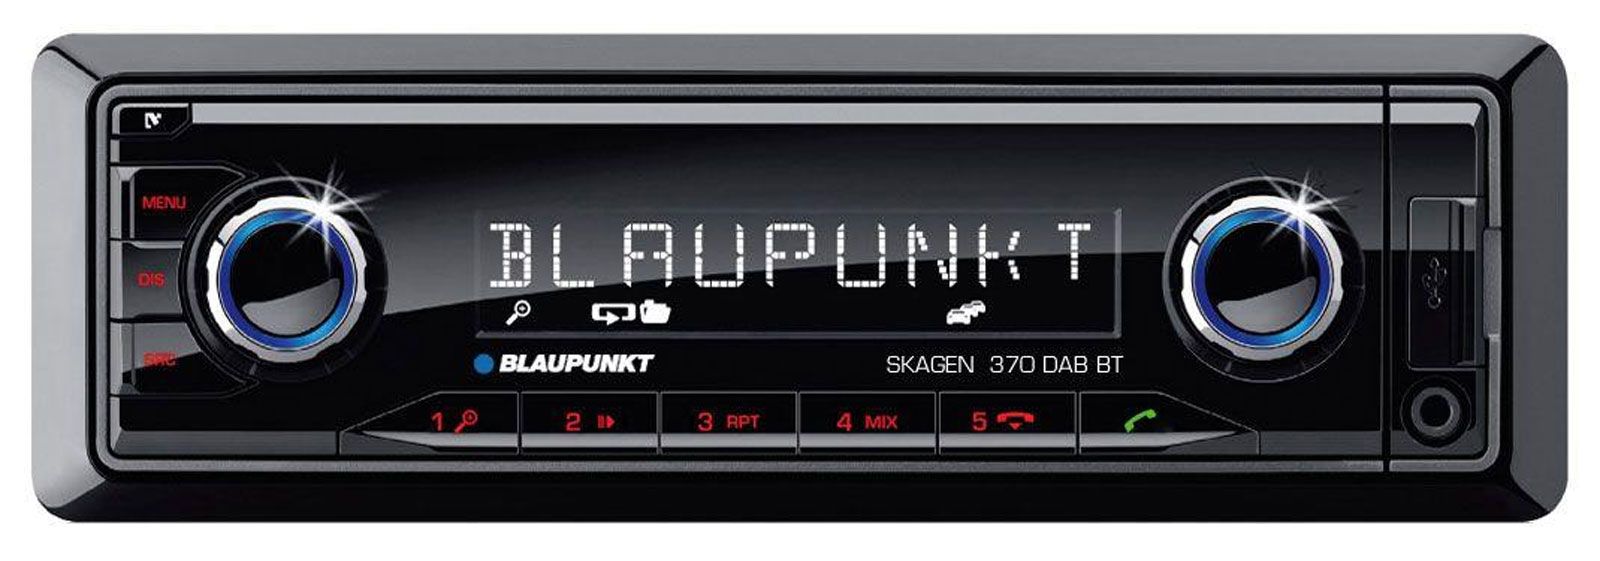 Blaupunkt Skagen 370 DAB BT Bluetooth digital car radio stereo aerial MP3 iPhone 